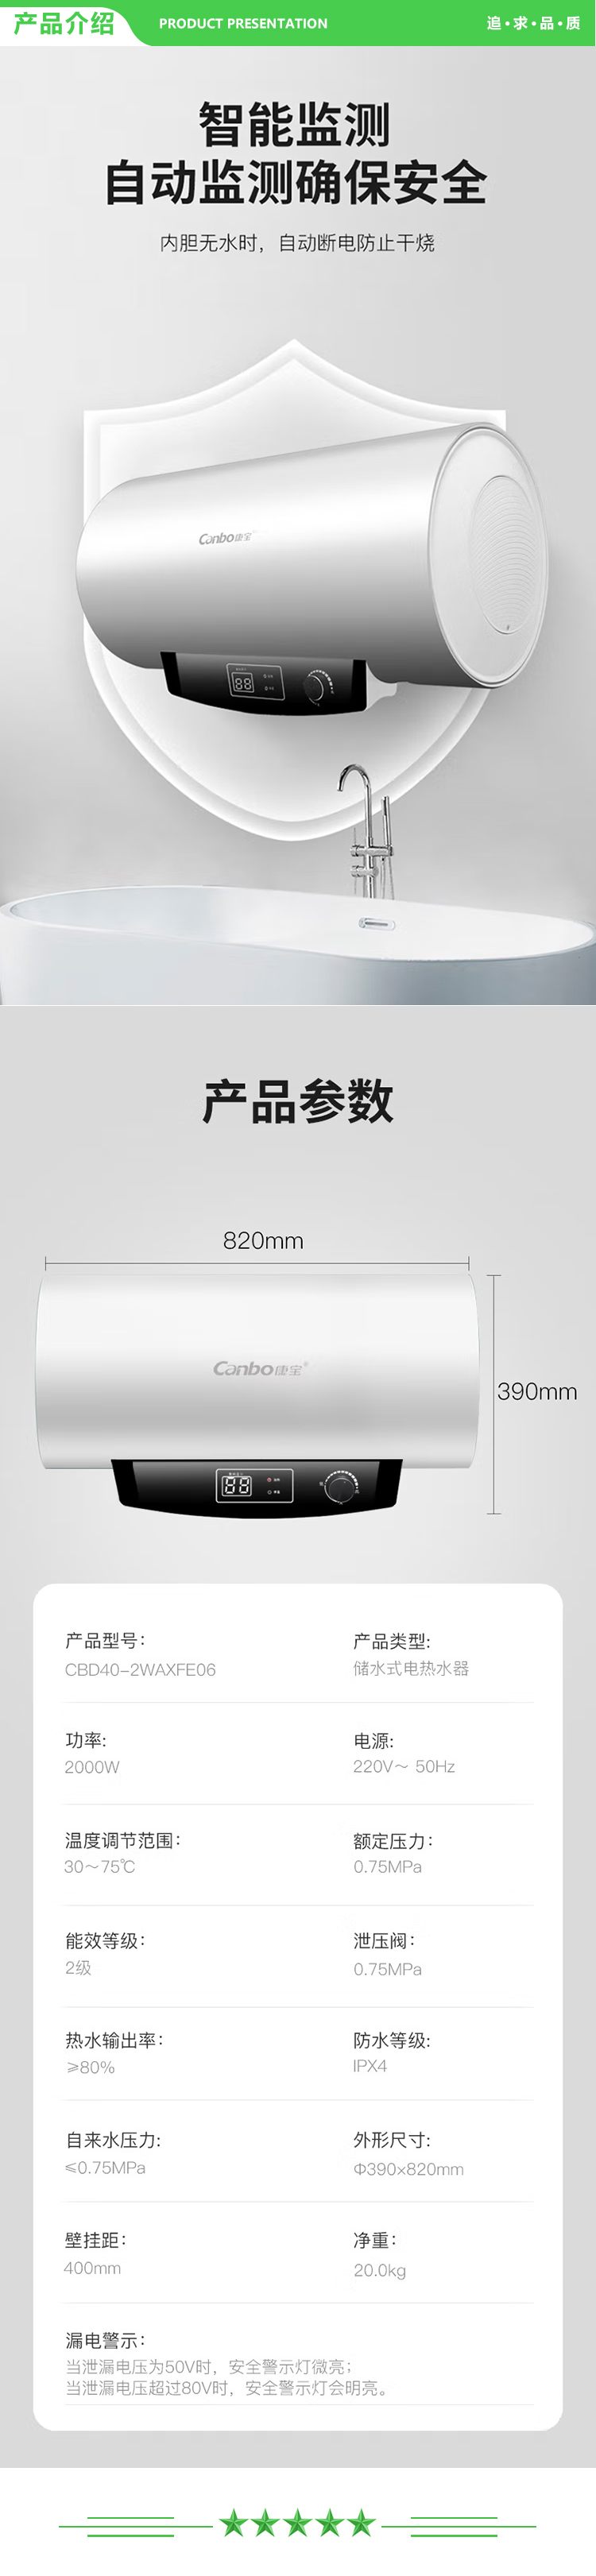 康宝 Canbo CBD60-2WAXFE06 储水式电热水器 60升大容量2000w大功率 不锈钢 家用热水器经济节能保温 .jpg